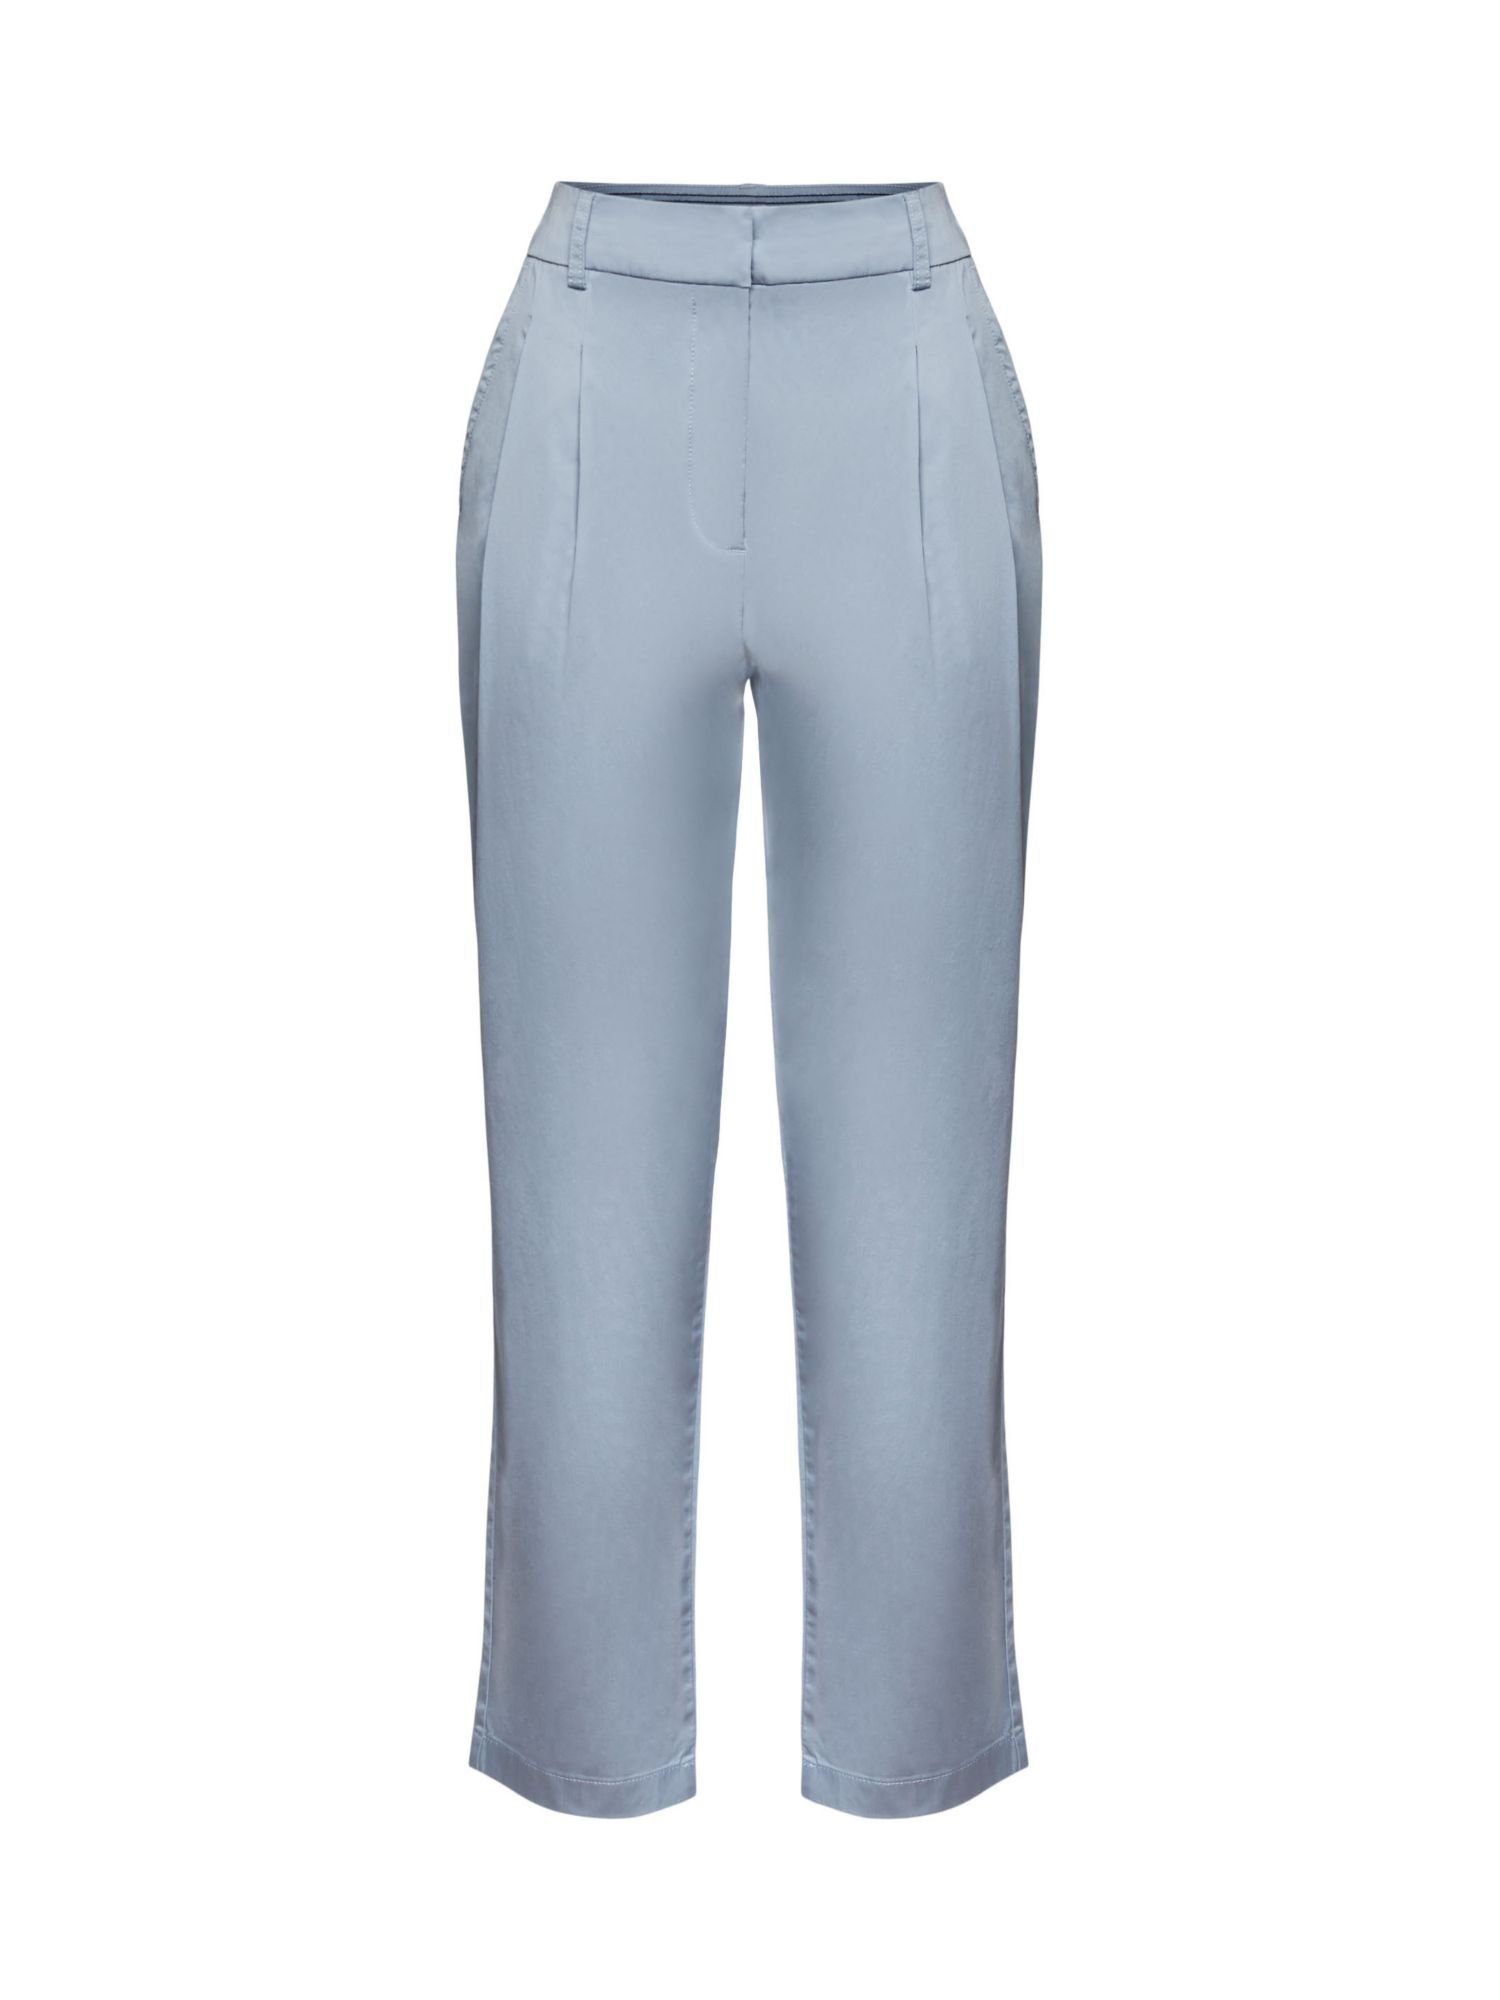 Esprit Collection 7/8-Hose Pants woven LIGHT BLUE LAVENDER